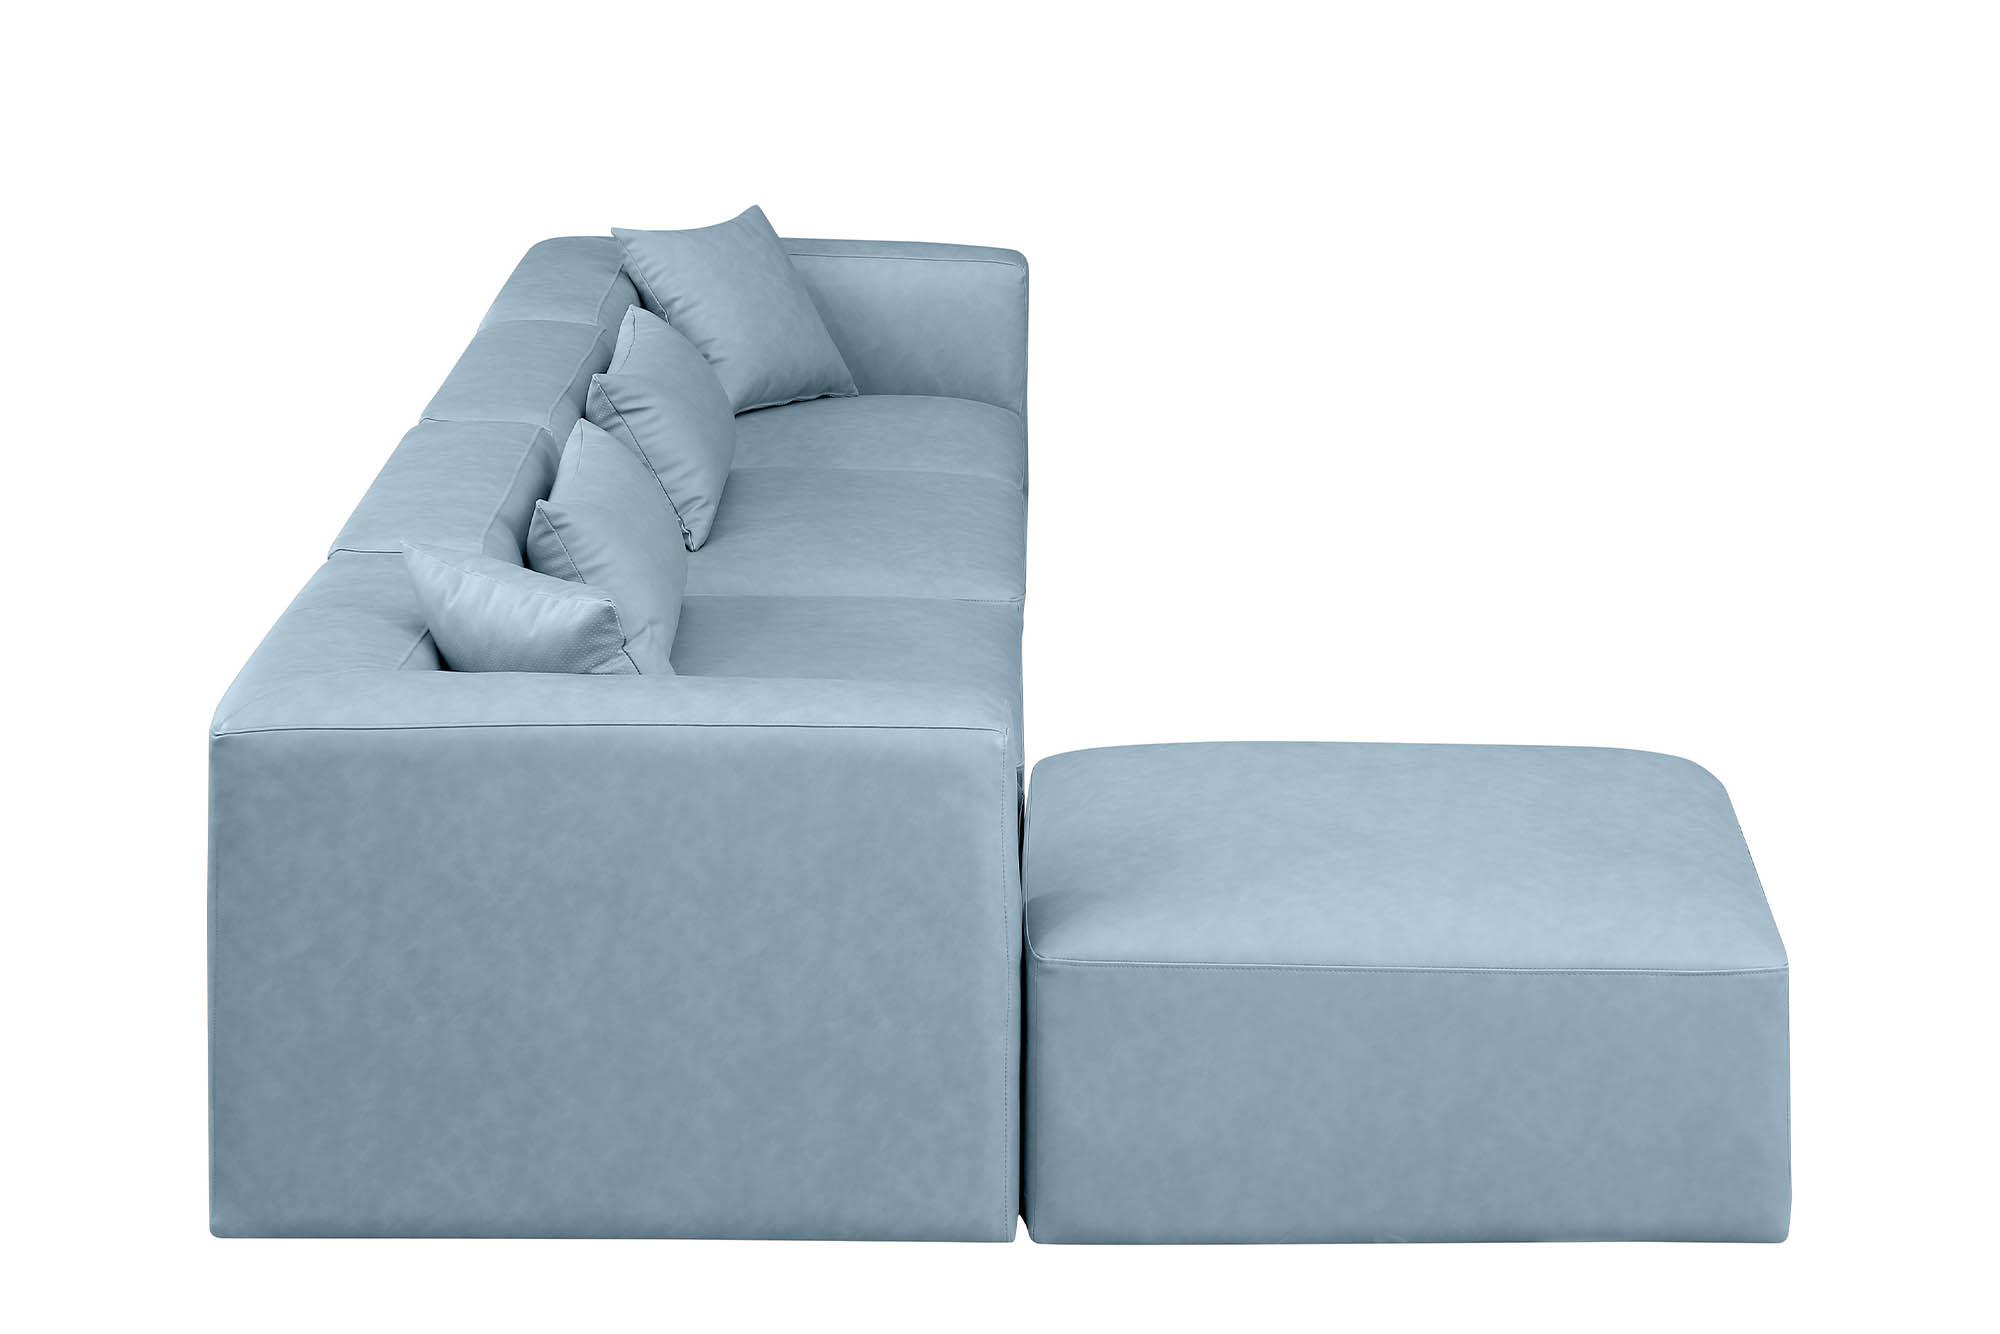 

    
Meridian Furniture CUBE 668LtBlu-Sec5A Modular Sectional Sofa Light Blue 668LtBlu-Sec5A
